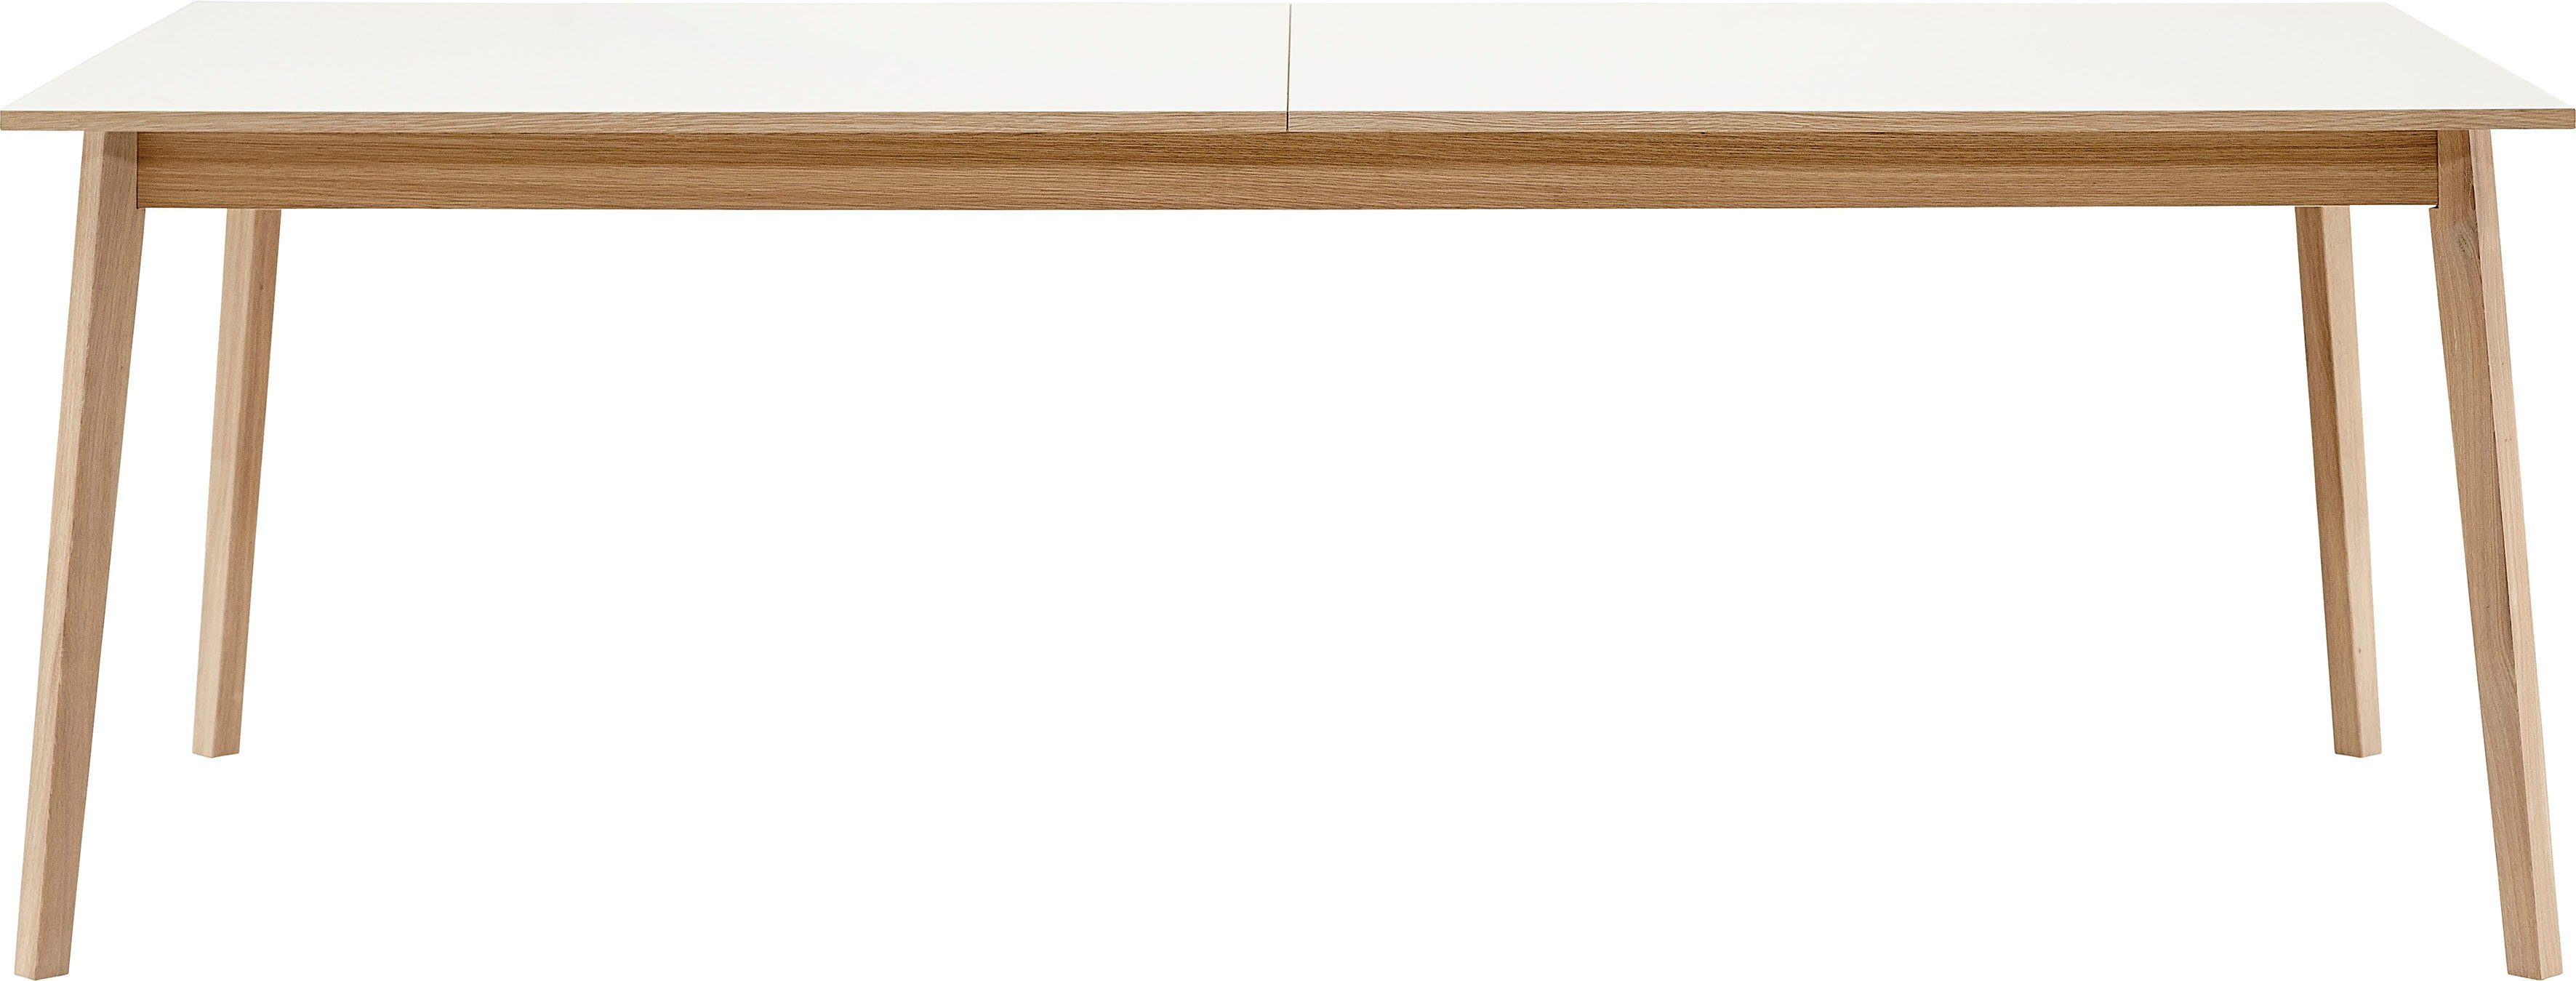 by Eiche aus Furniture Gestell Avion, Hammel Hammel in Esstisch cm, 220(310)x100 Basic Tischplatte und Melamin